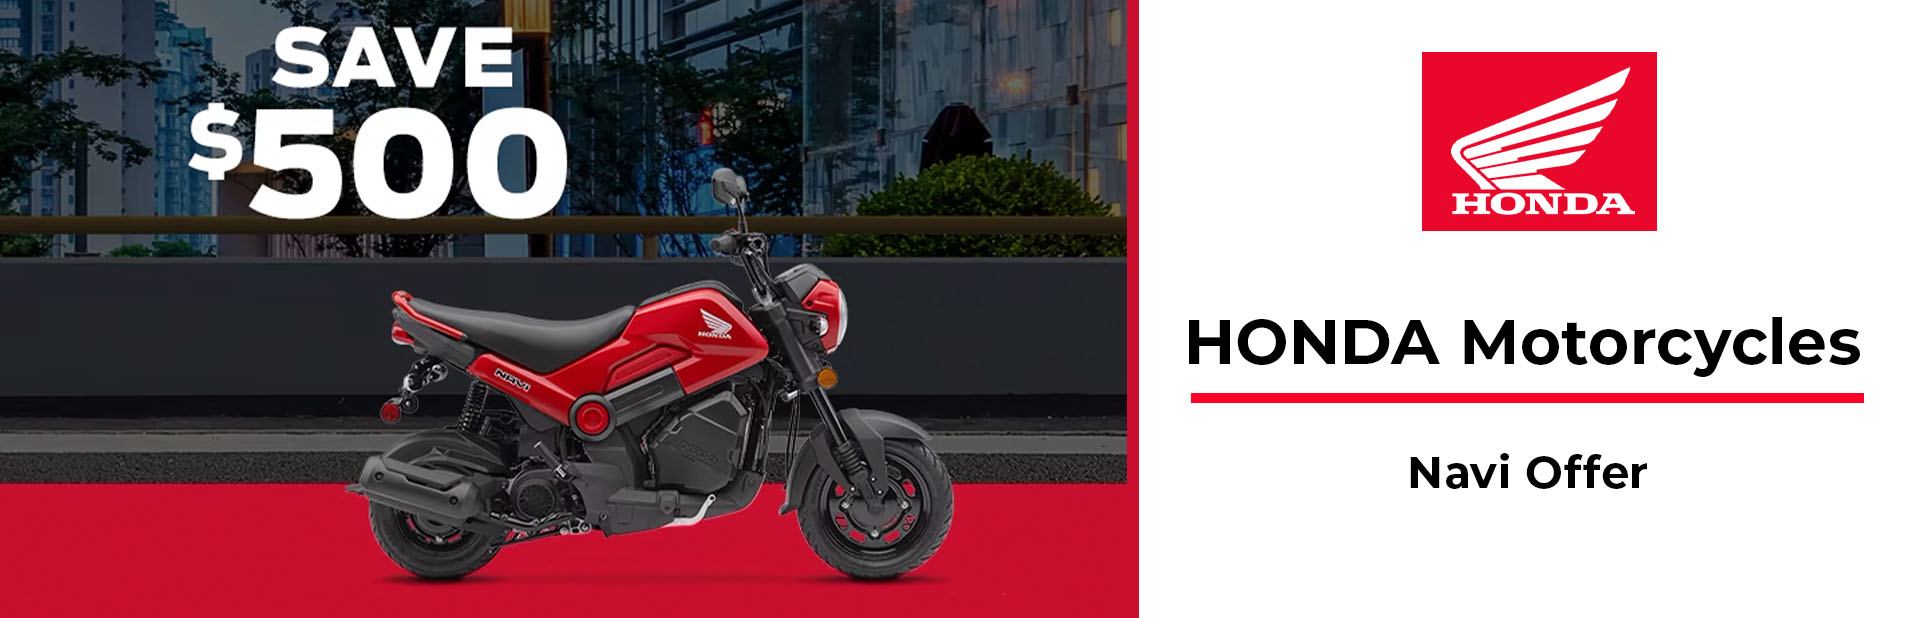 Honda: 2022 Navi Offer